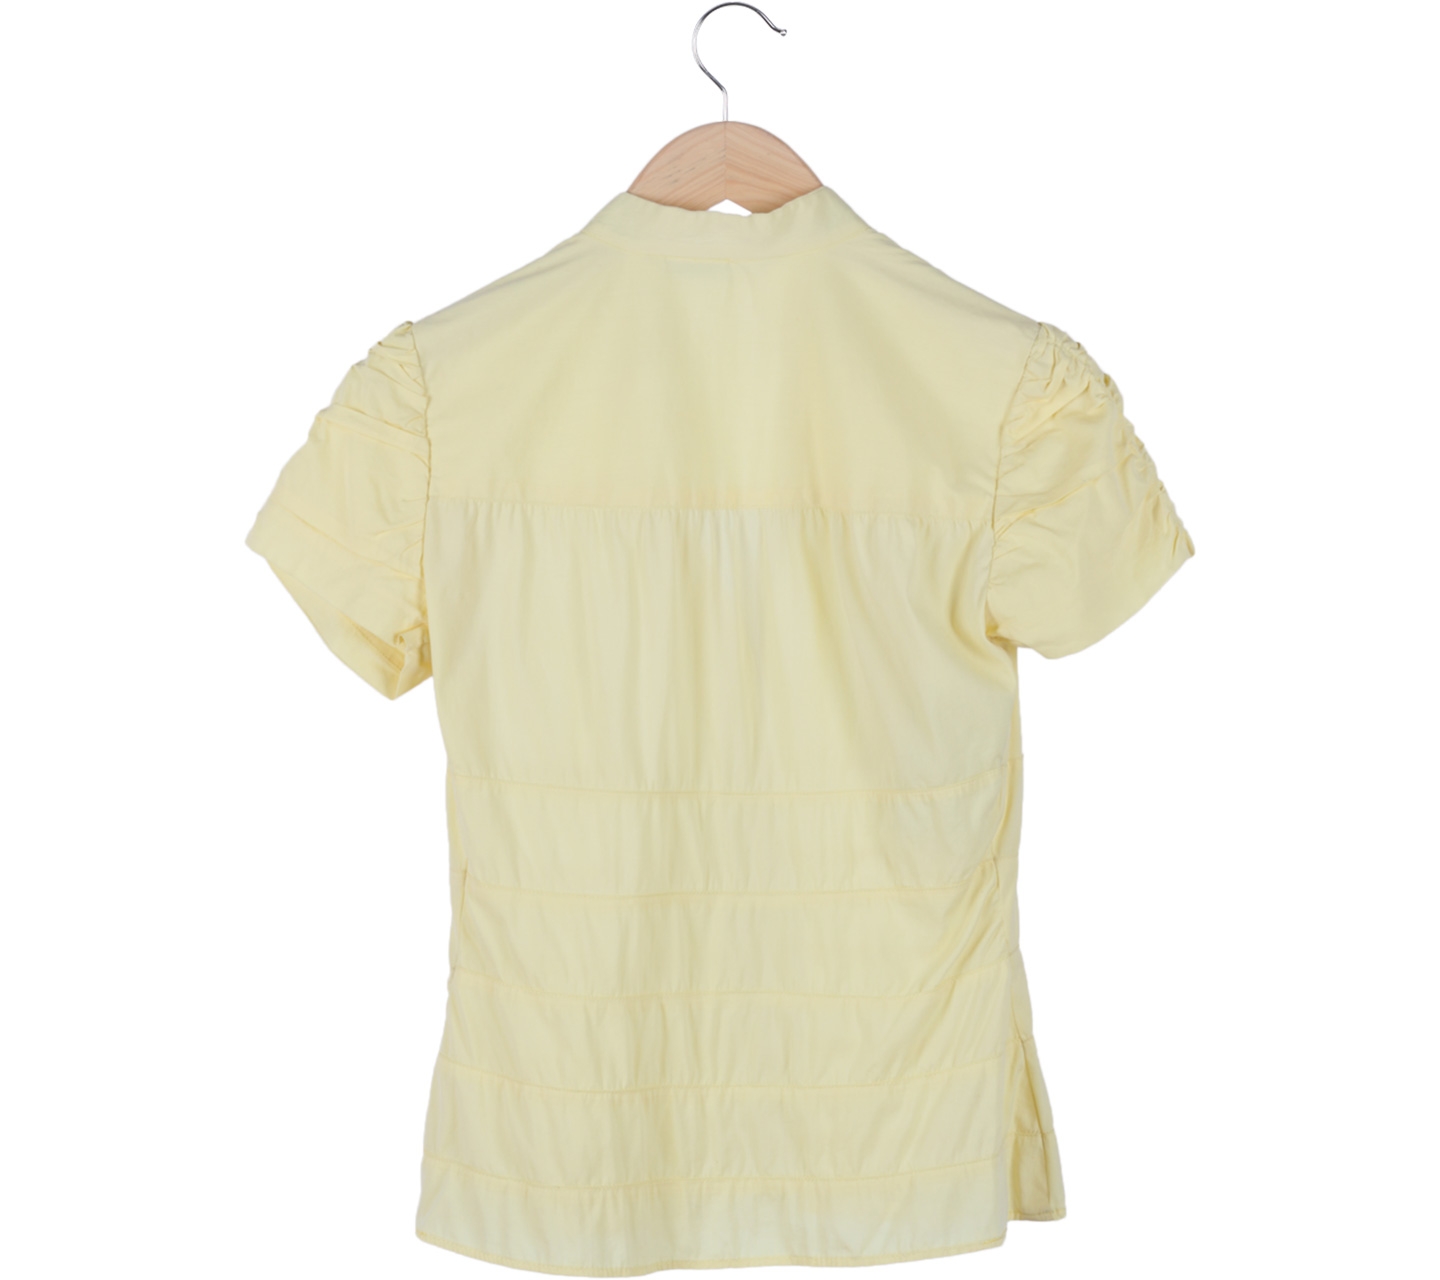 Zara Yellow Shirt